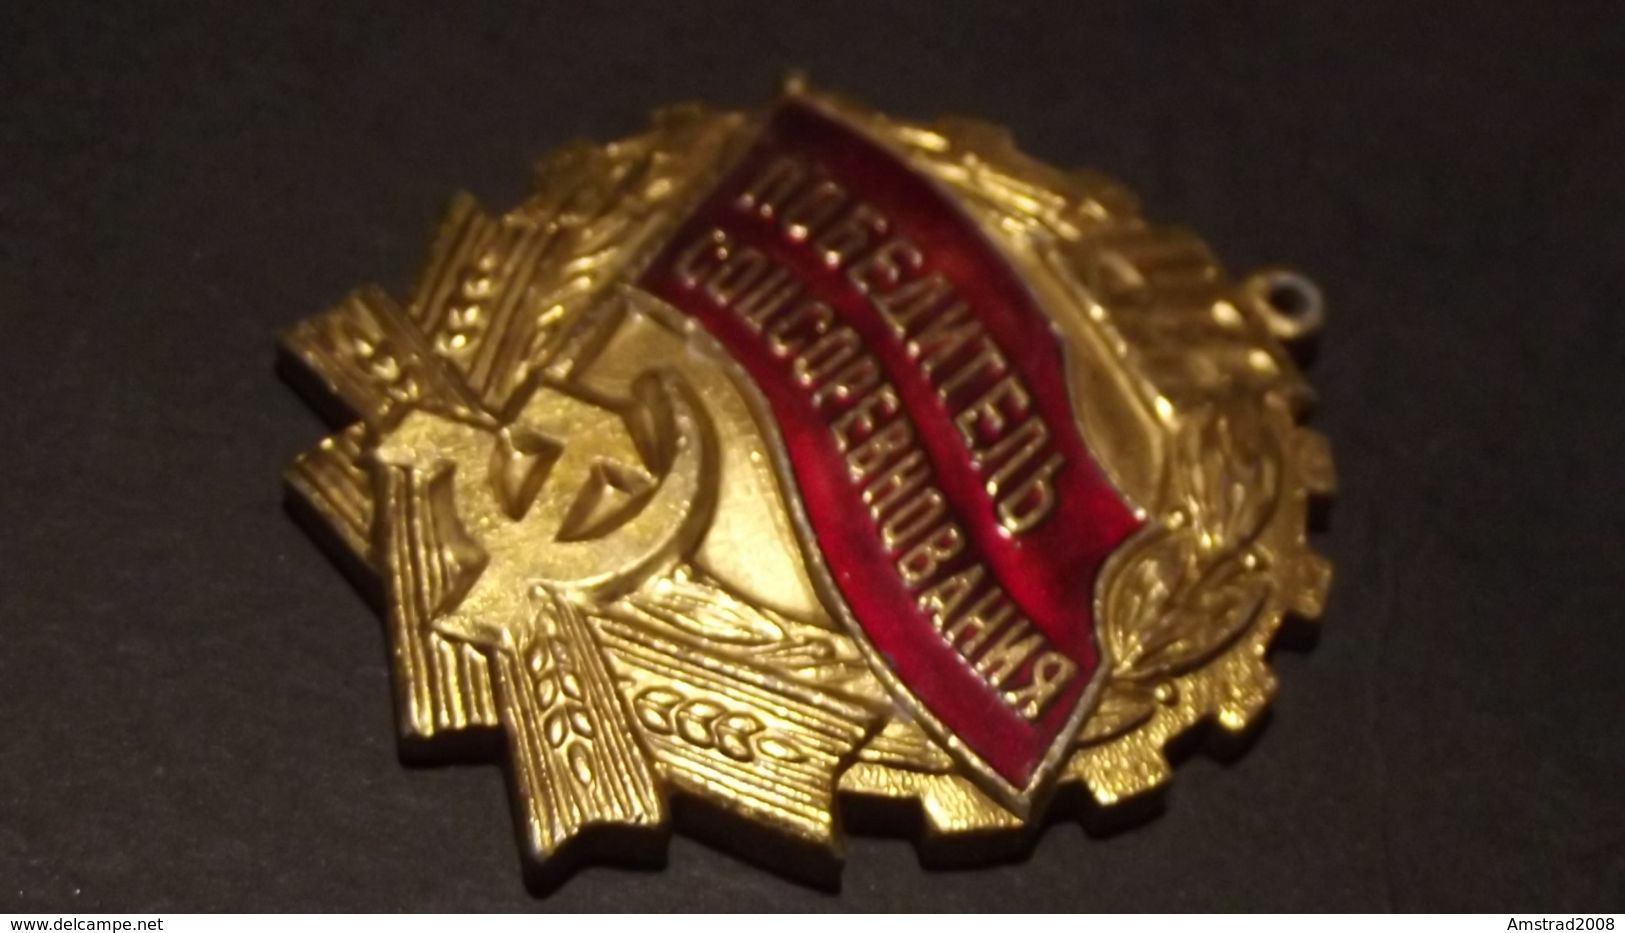 1973 URSS CCCP MEDAGLIA MILITARE RUSSA DELL'ESERCITO SOVIETICO RUSSIA  MILITARY RUSSIAN MEDAL MILITAIRE KGB LENIN HL - Rusia